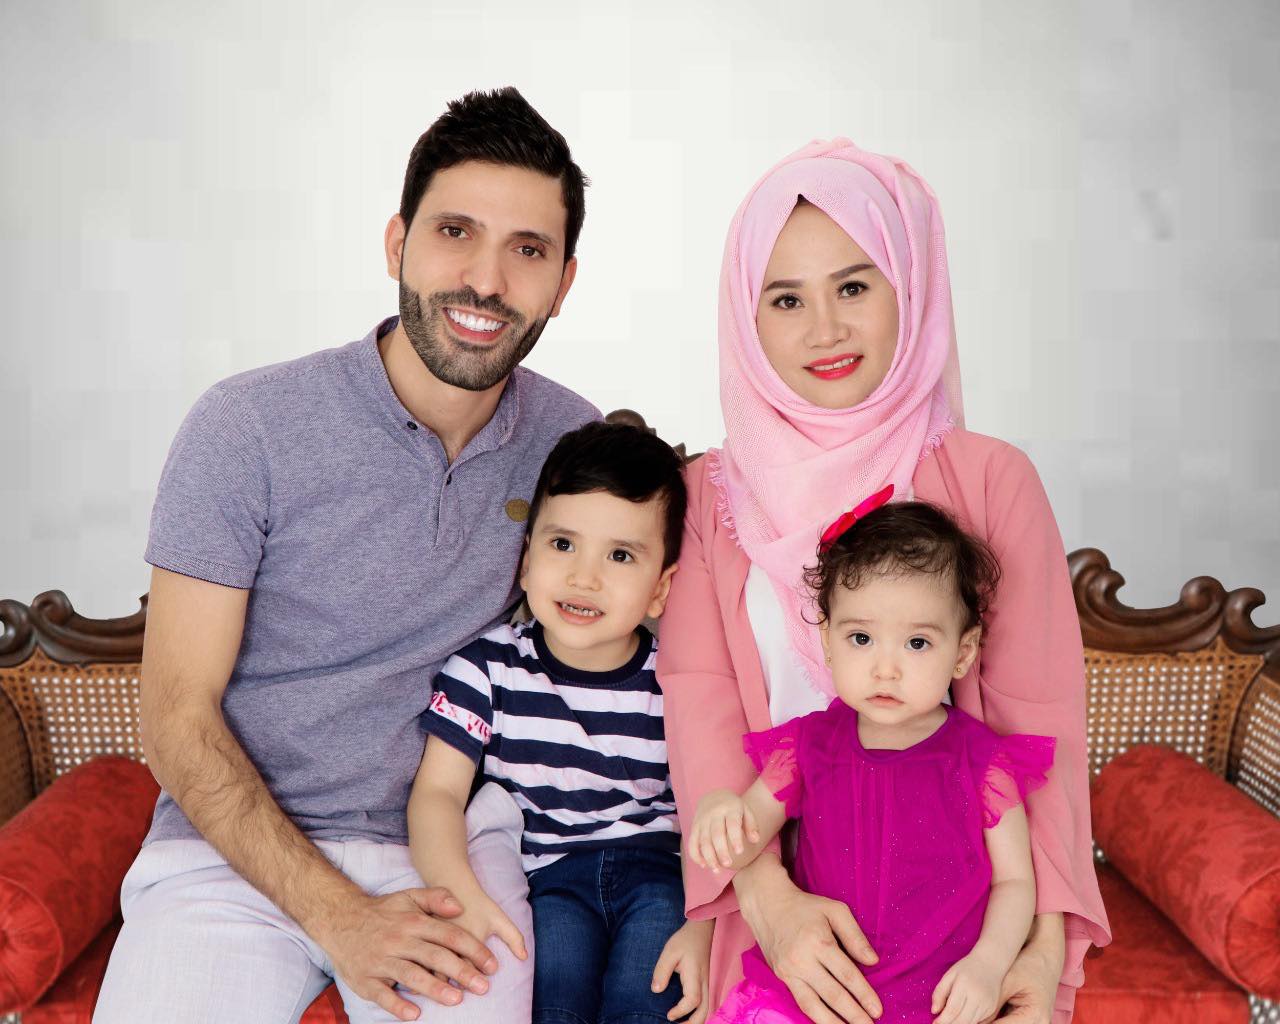 Mẹ bỉm trải lòng về cuộc sống gia đình ở Dubai, khác biệt văn hoá trong phương pháp chăm sóc và giáo dục con cái, khó khăn nhưng cố gắng vì con - Ảnh 1.